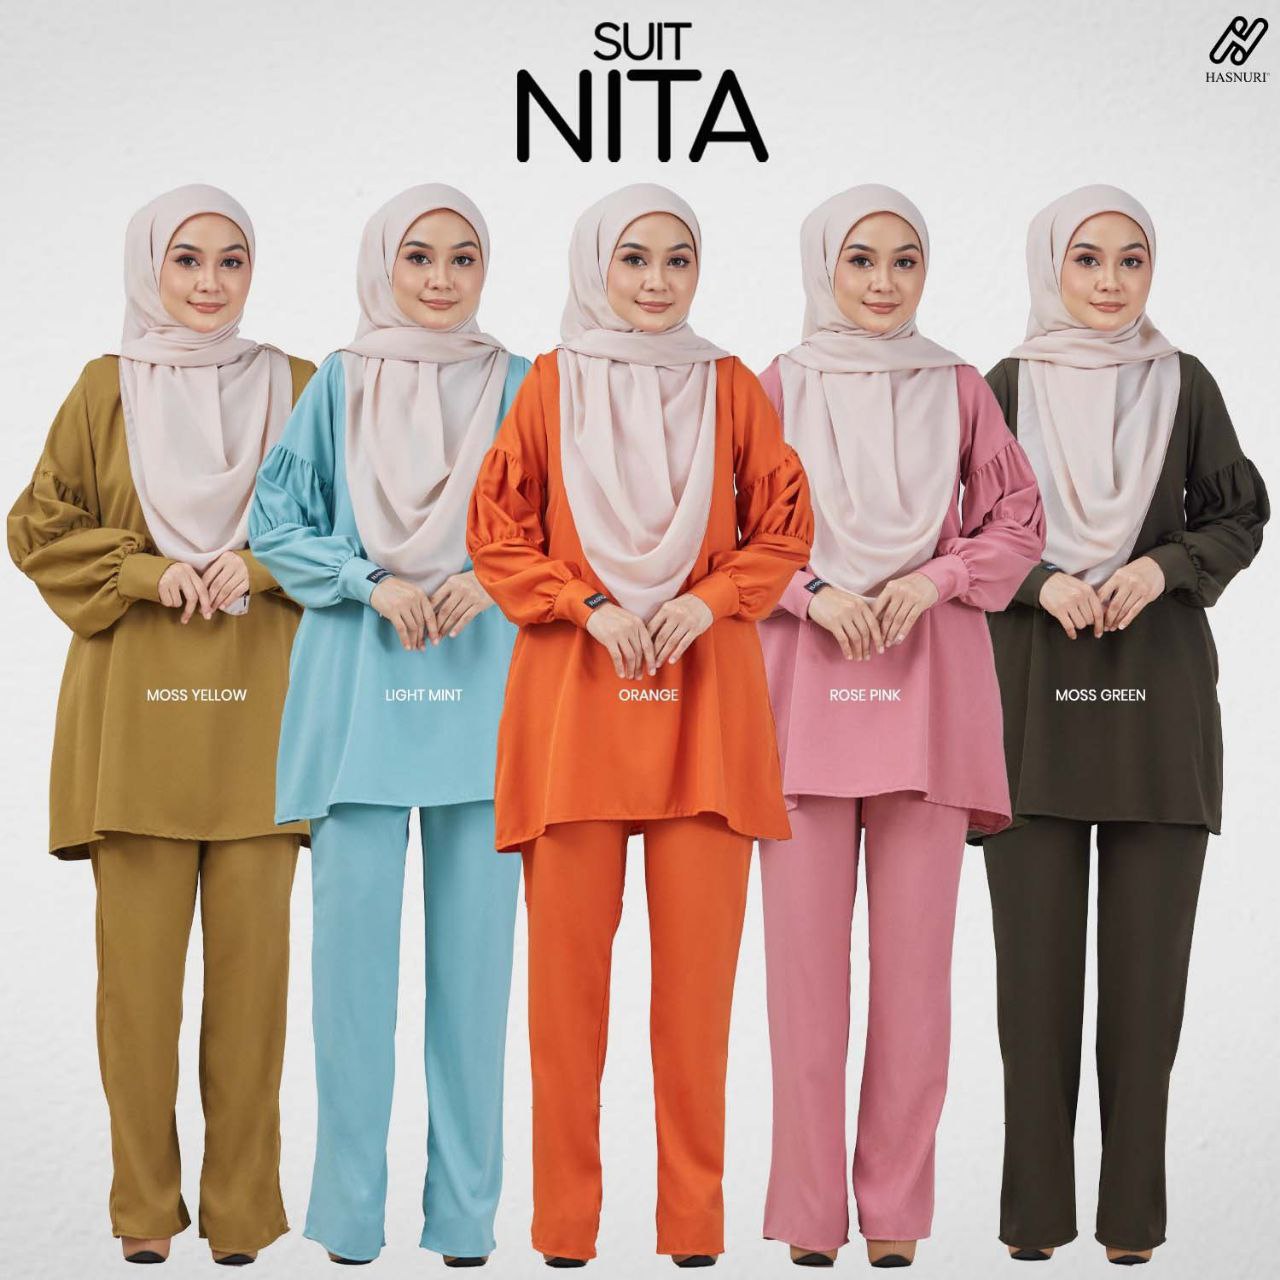 Suit Nita - Rose Pink